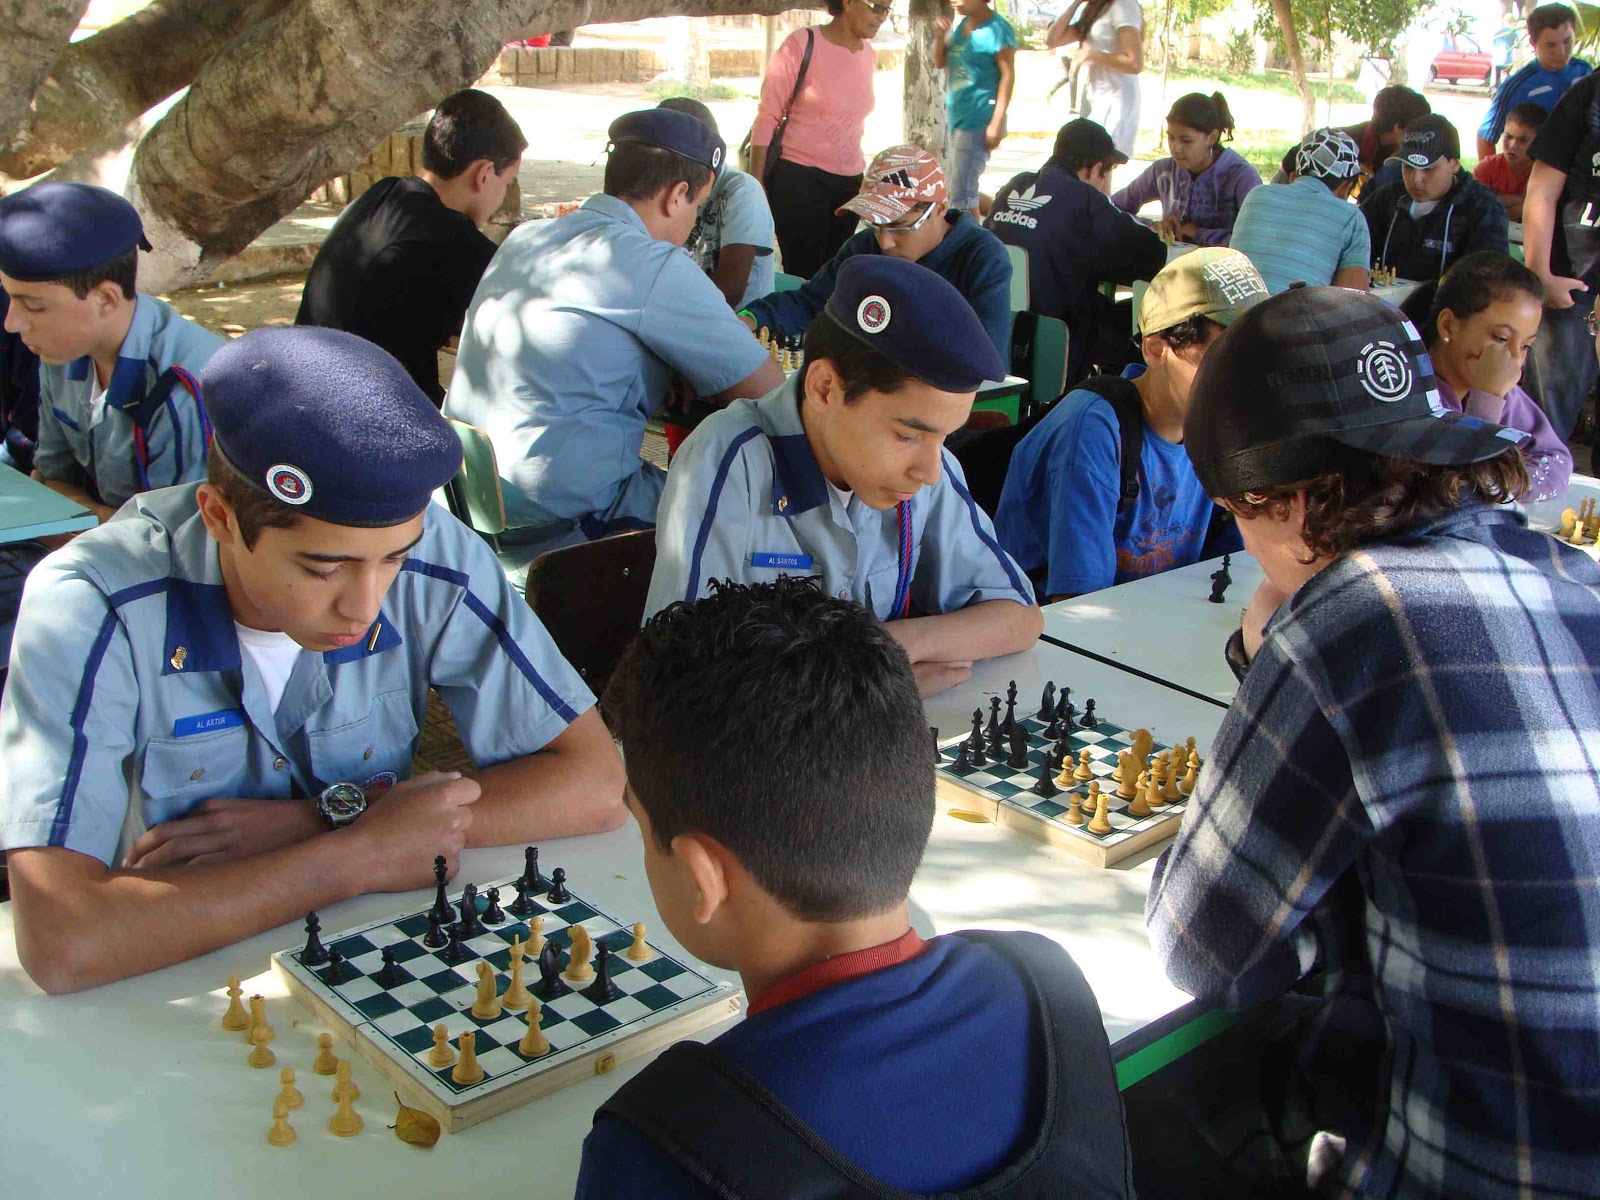 Blog Atividades Itinerantes: Xadrez na escola